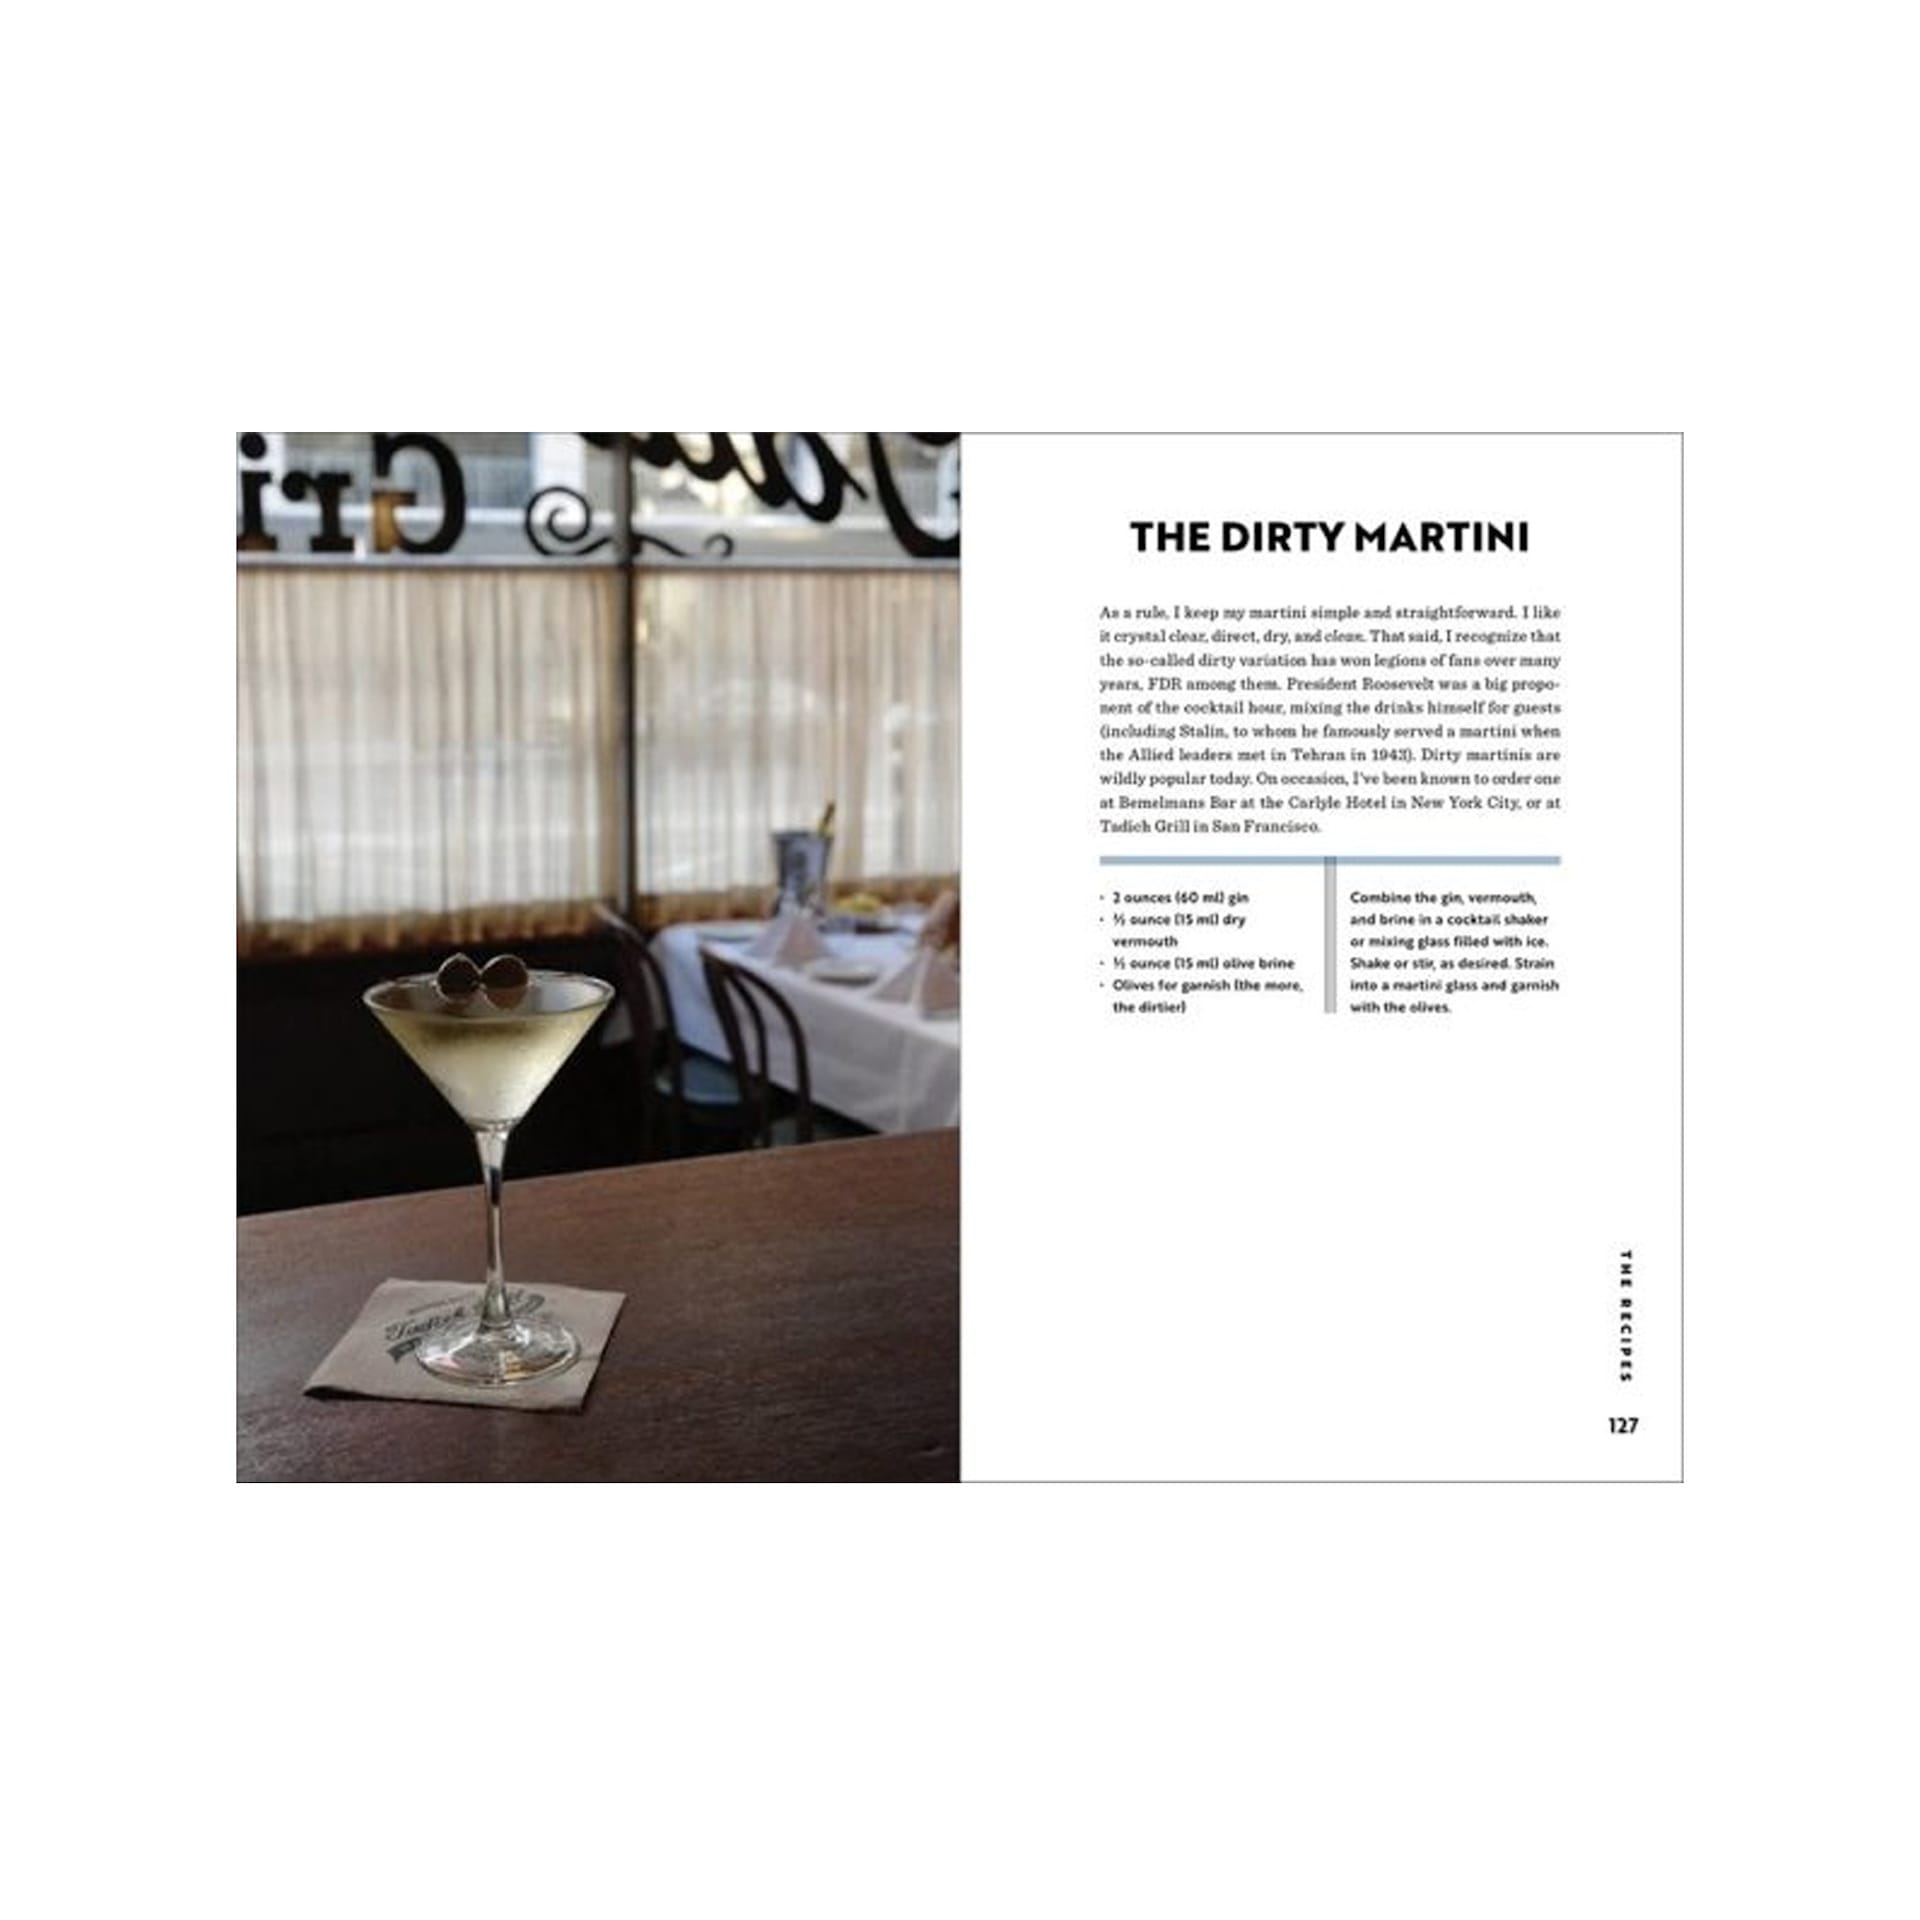 The Martini - New Mags - NO GA